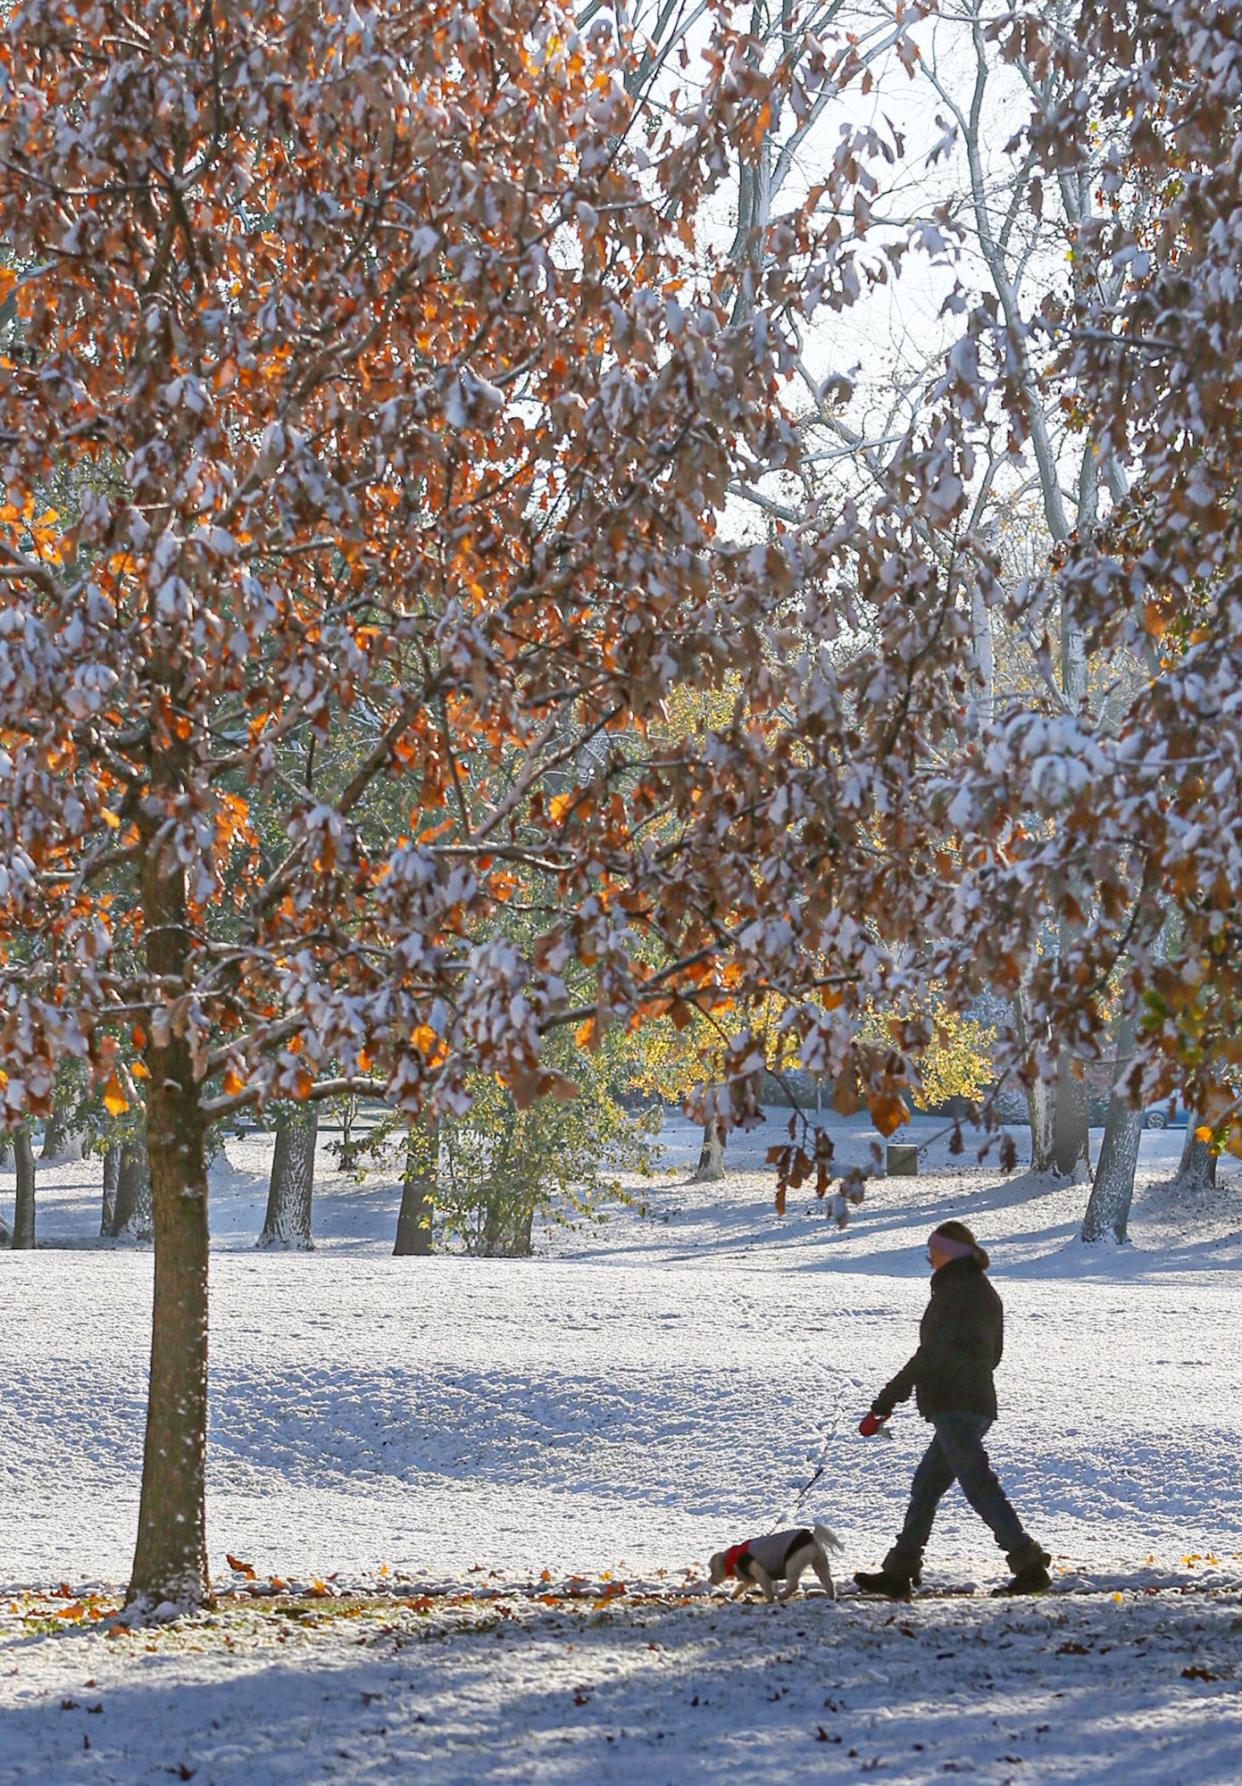 A dog walker strolls by a snowy Hardesty Park in Akron.